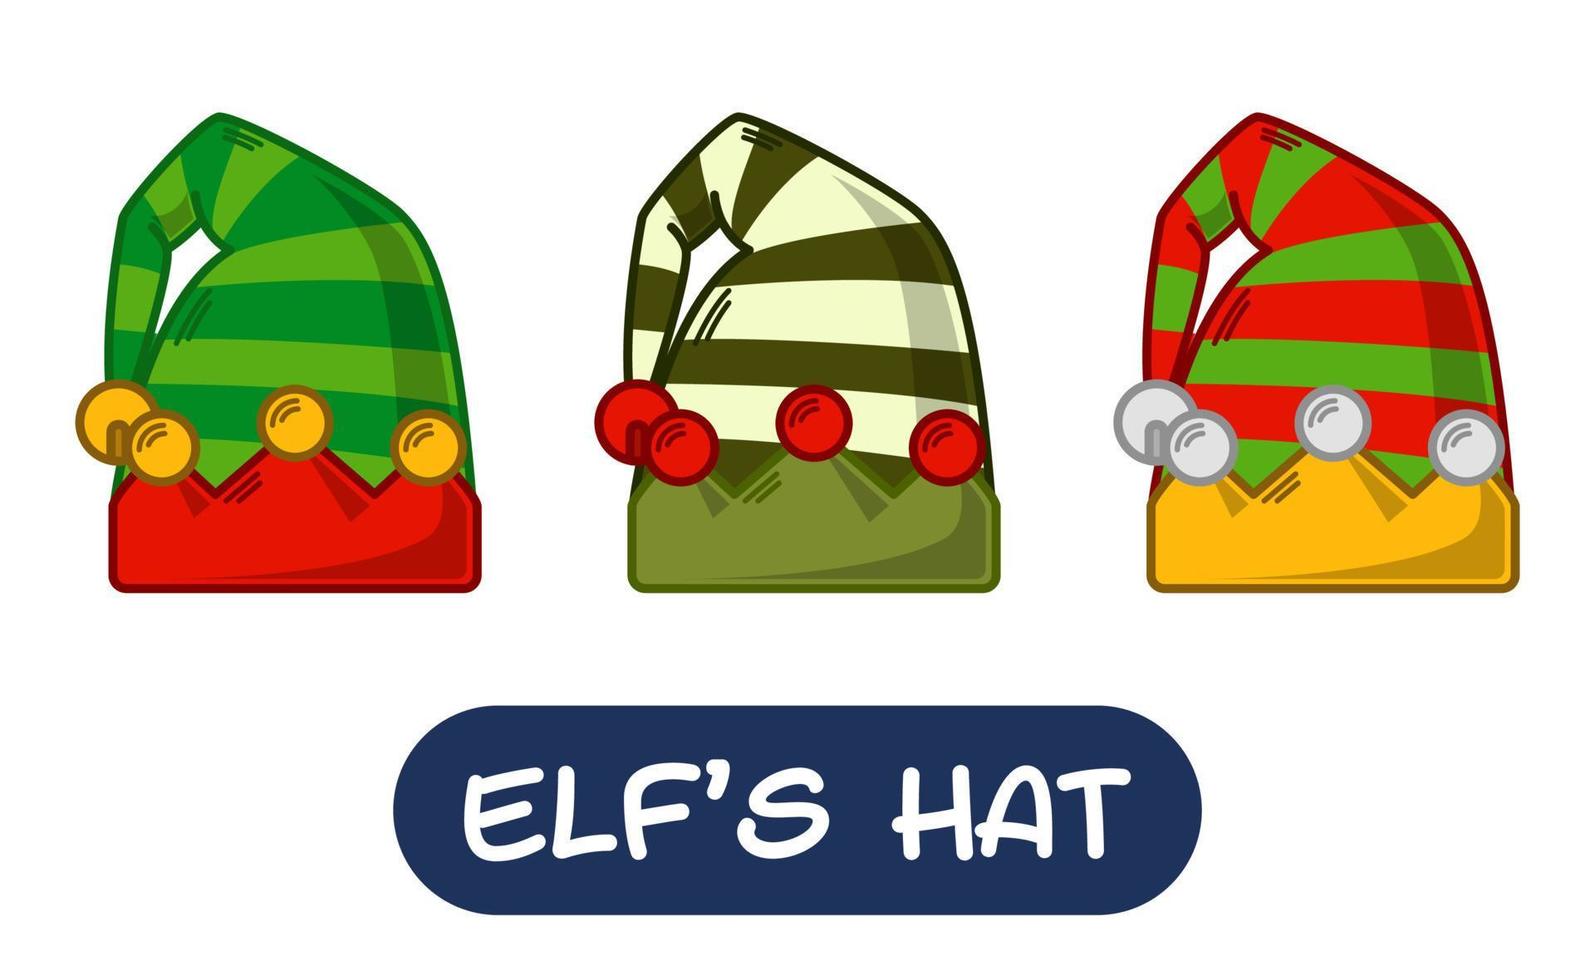 illustration de chapeau d'elfe de dessin animé. ensemble de couleurs de variation. vecteur eps 10